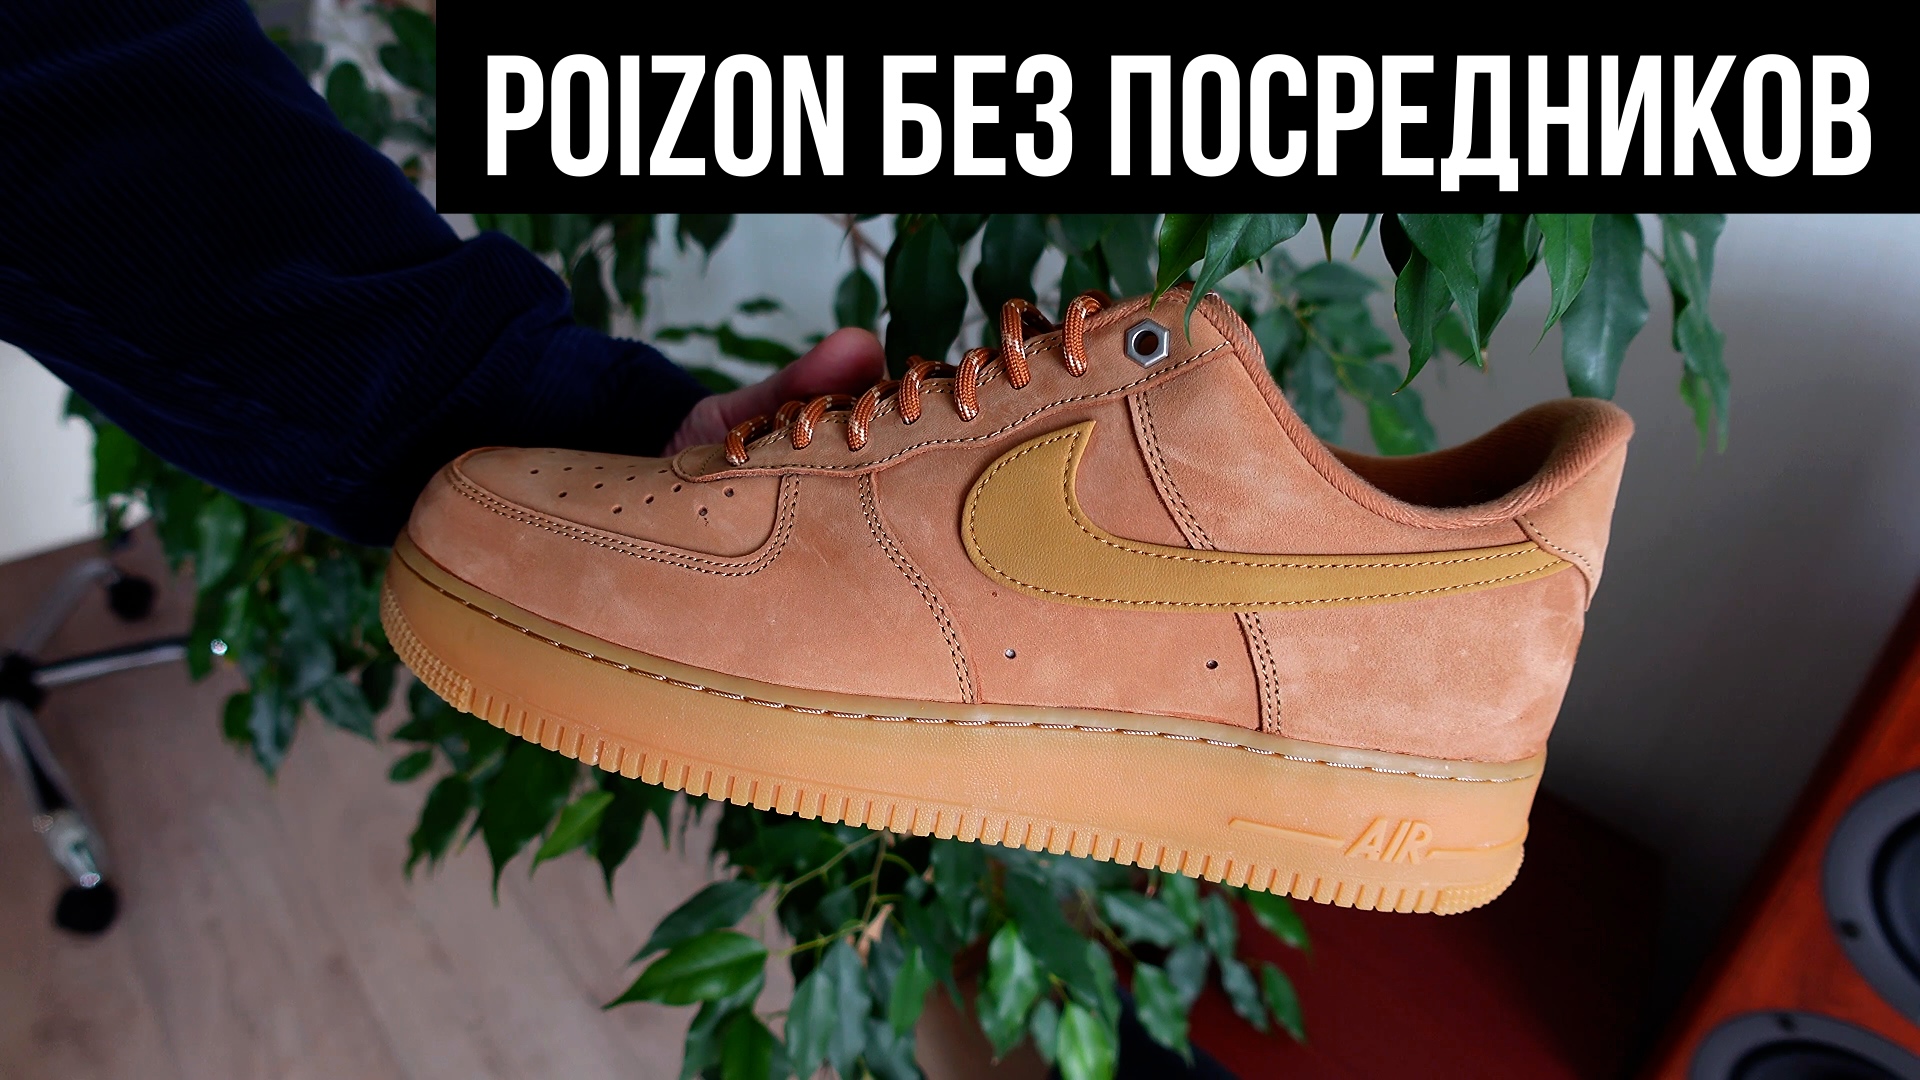 Купил Nike Air Force 1 на Poizon БЕЗ ПОСРЕДНИКОВ